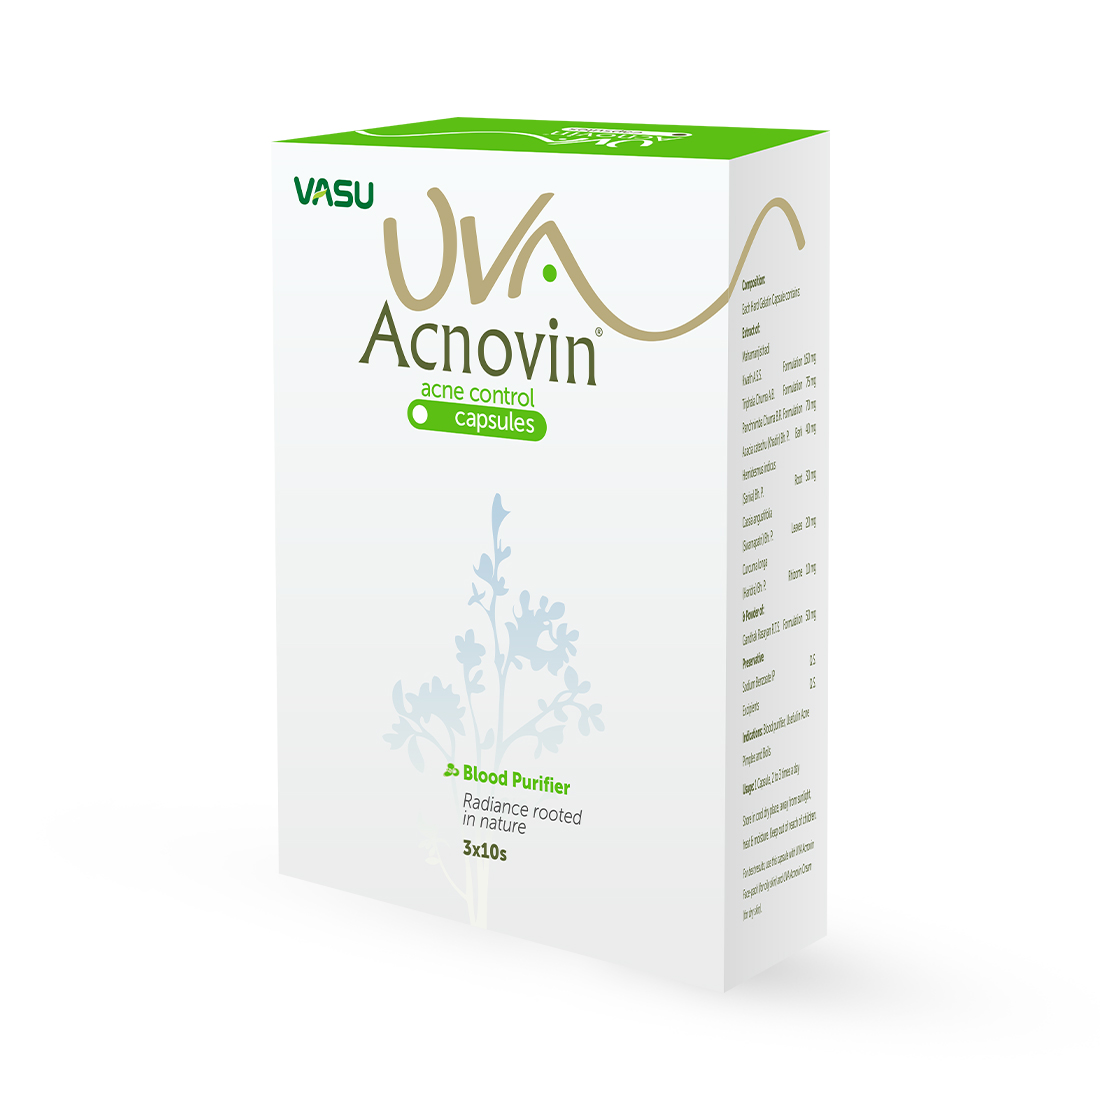 Buy Vasu Uva Acnovin Capsule at Best Price Online